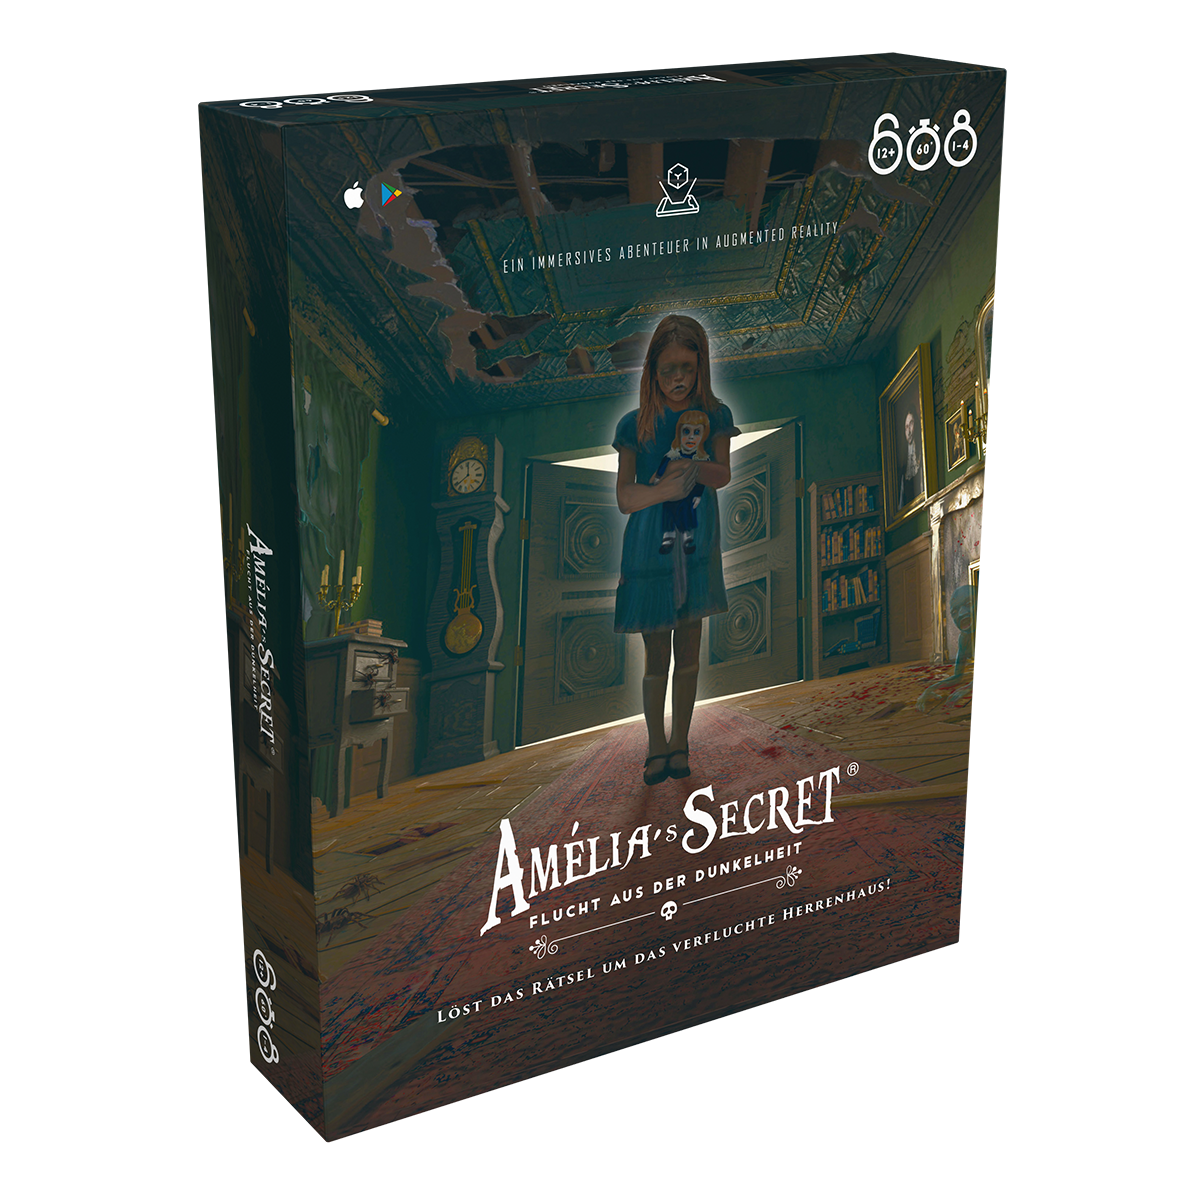 Amelia's Secret: Flucht aus der Dunkelheit